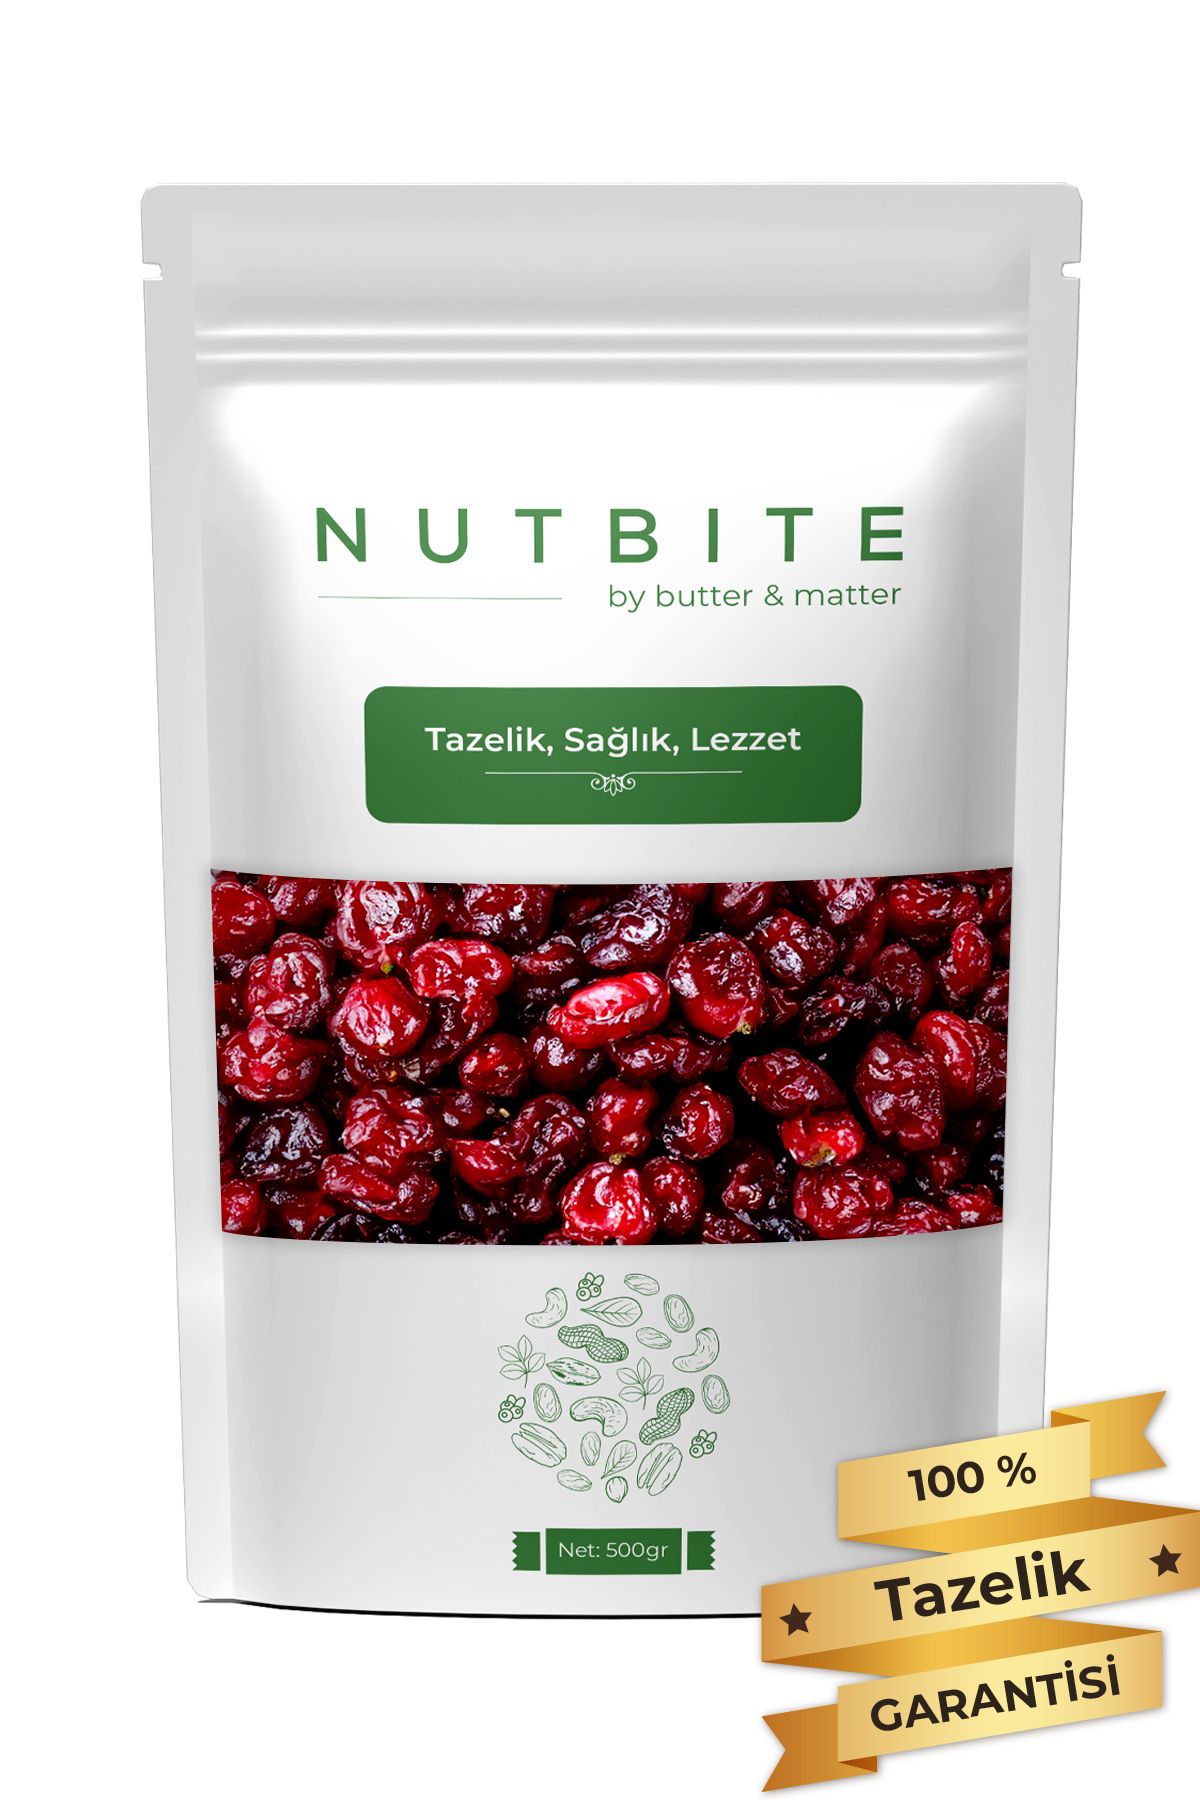 NUTBITE Premium Turna Yemişi 500gr - Cranberry - Çekirdeksiz Tane - Taptaze Yeni Mahsül